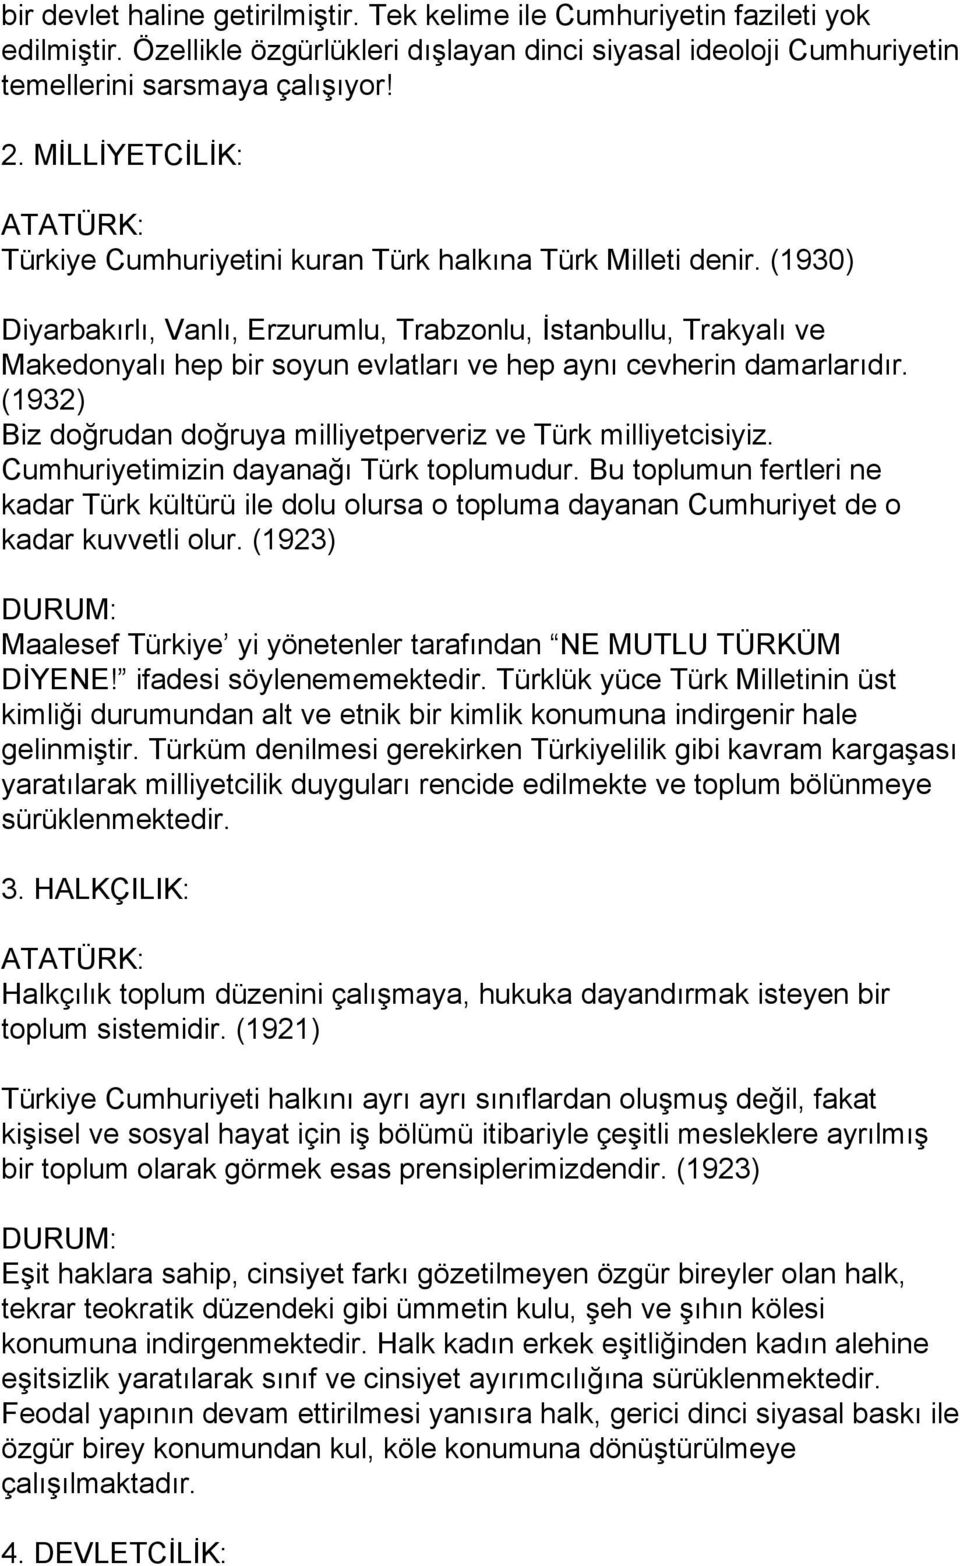 (1930) Diyarbakırlı, Vanlı, Erzurumlu, Trabzonlu, İstanbullu, Trakyalı ve Makedonyalı hep bir soyun evlatları ve hep aynı cevherin damarlarıdır.